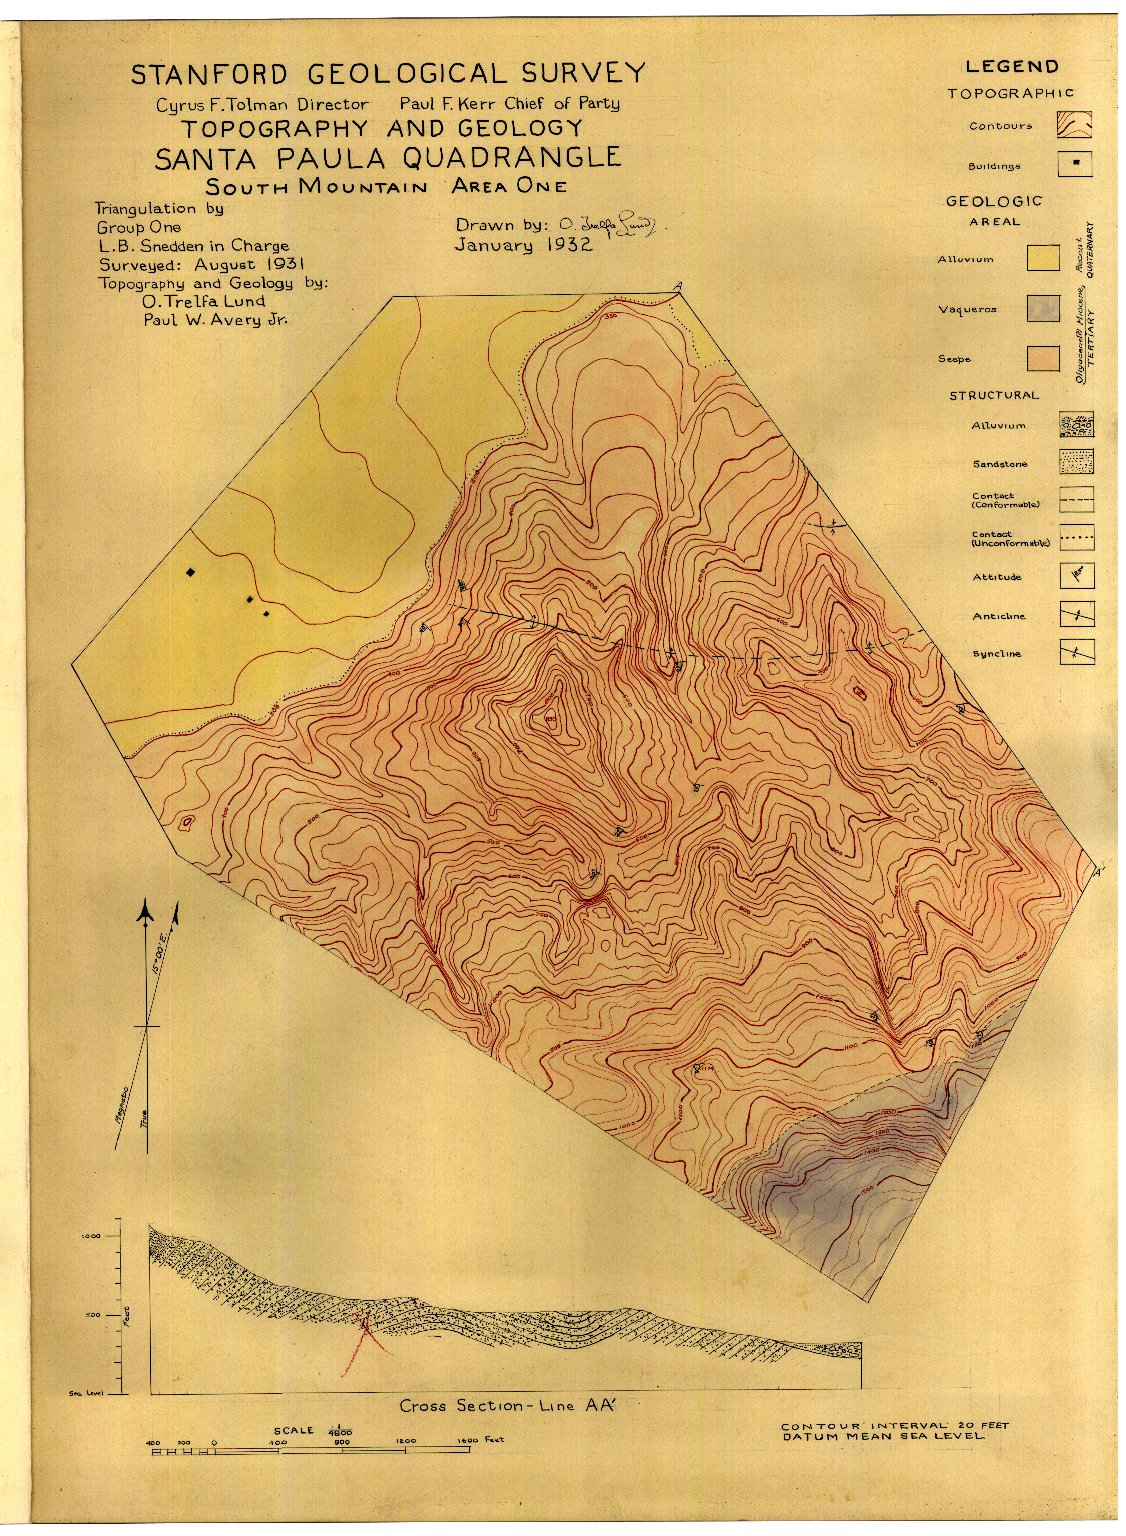 Geologic folio of a part of the Santa Paula quadrangle.